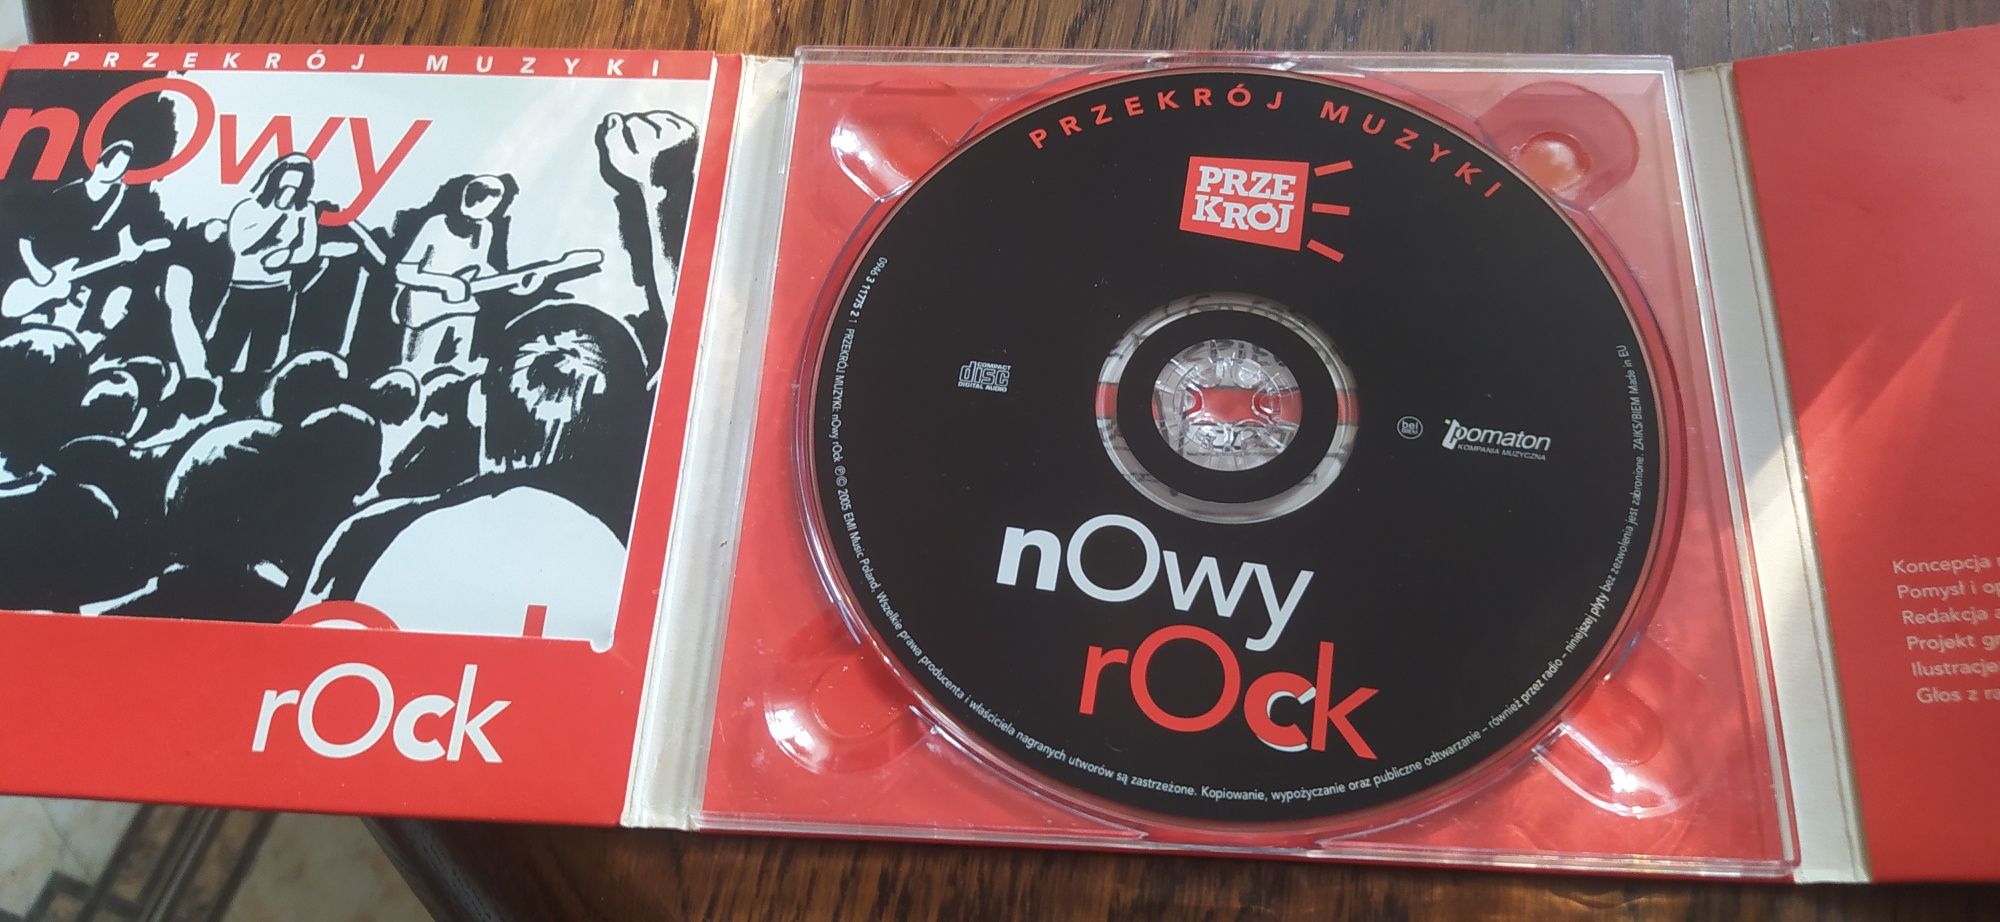 Przekrój Muzyki nowy rock CD